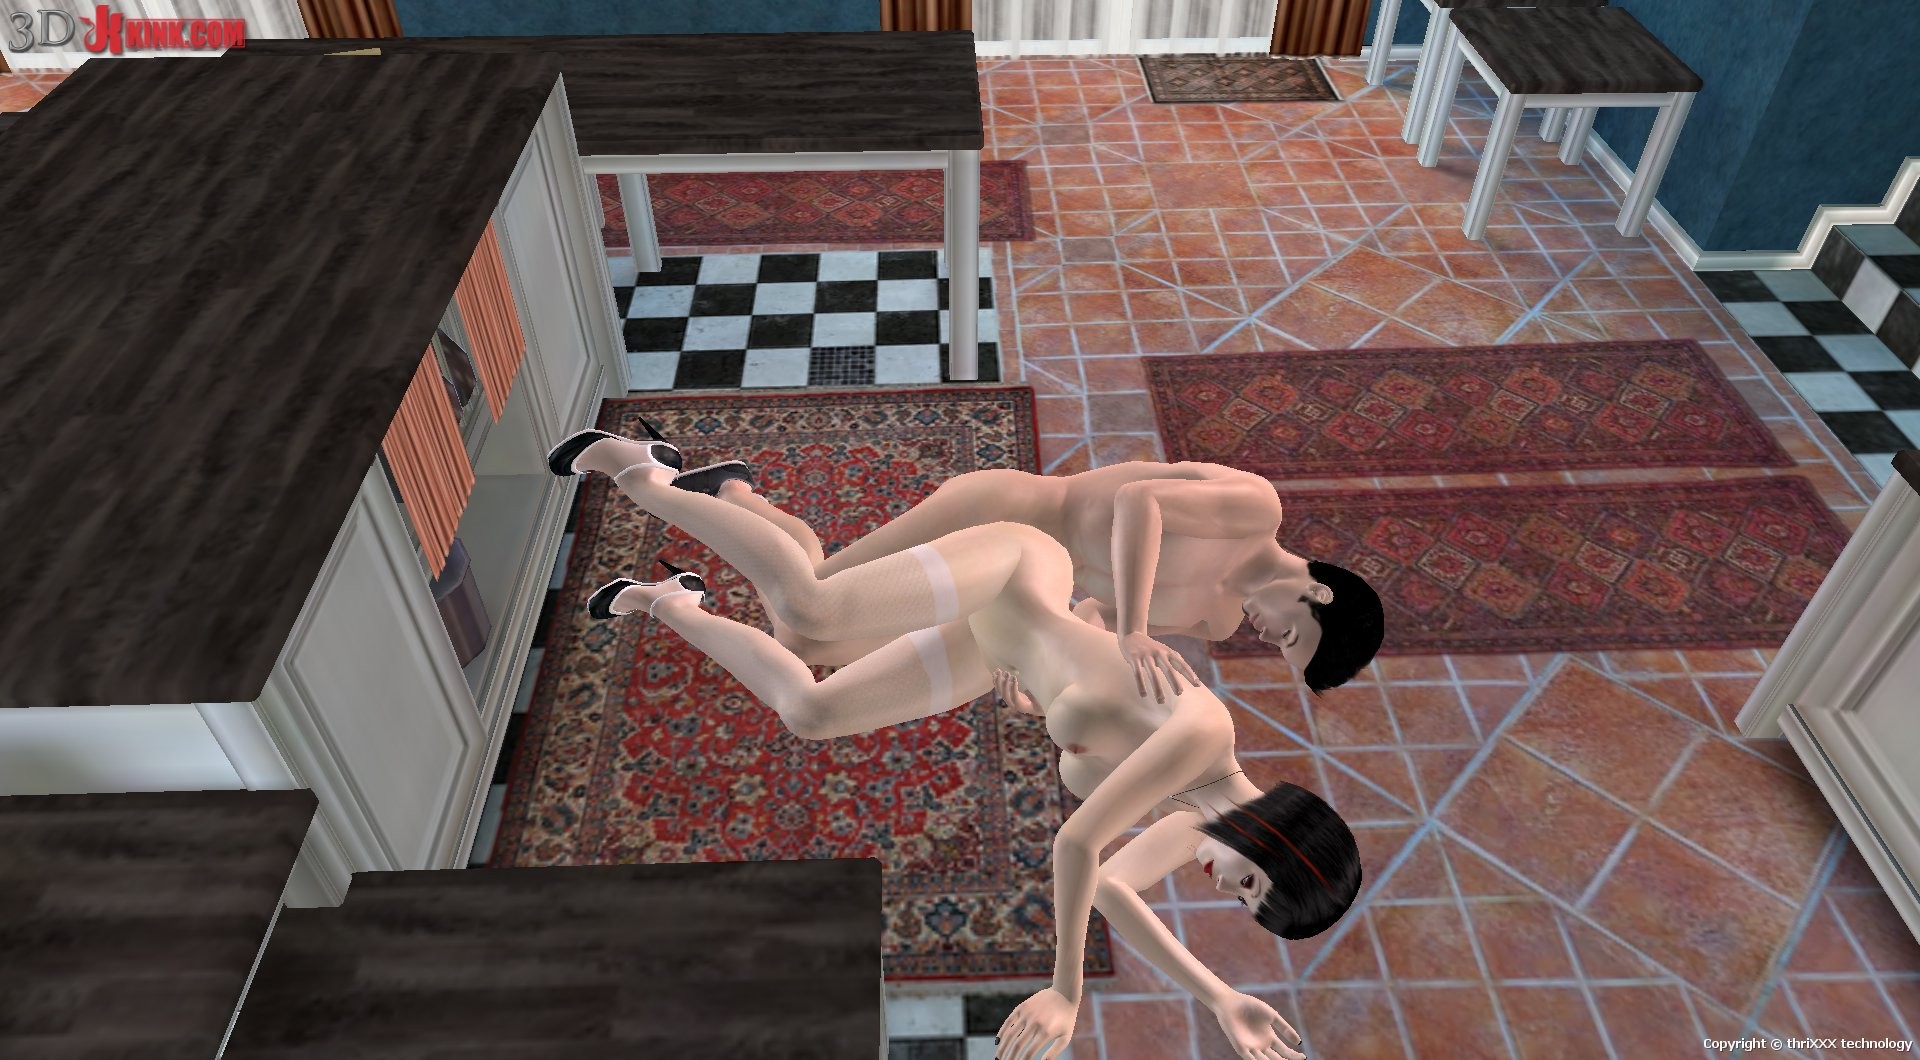 Une action bdsm chaude créée dans un jeu de sexe virtuel fétichiste en 3D !
 #69356229